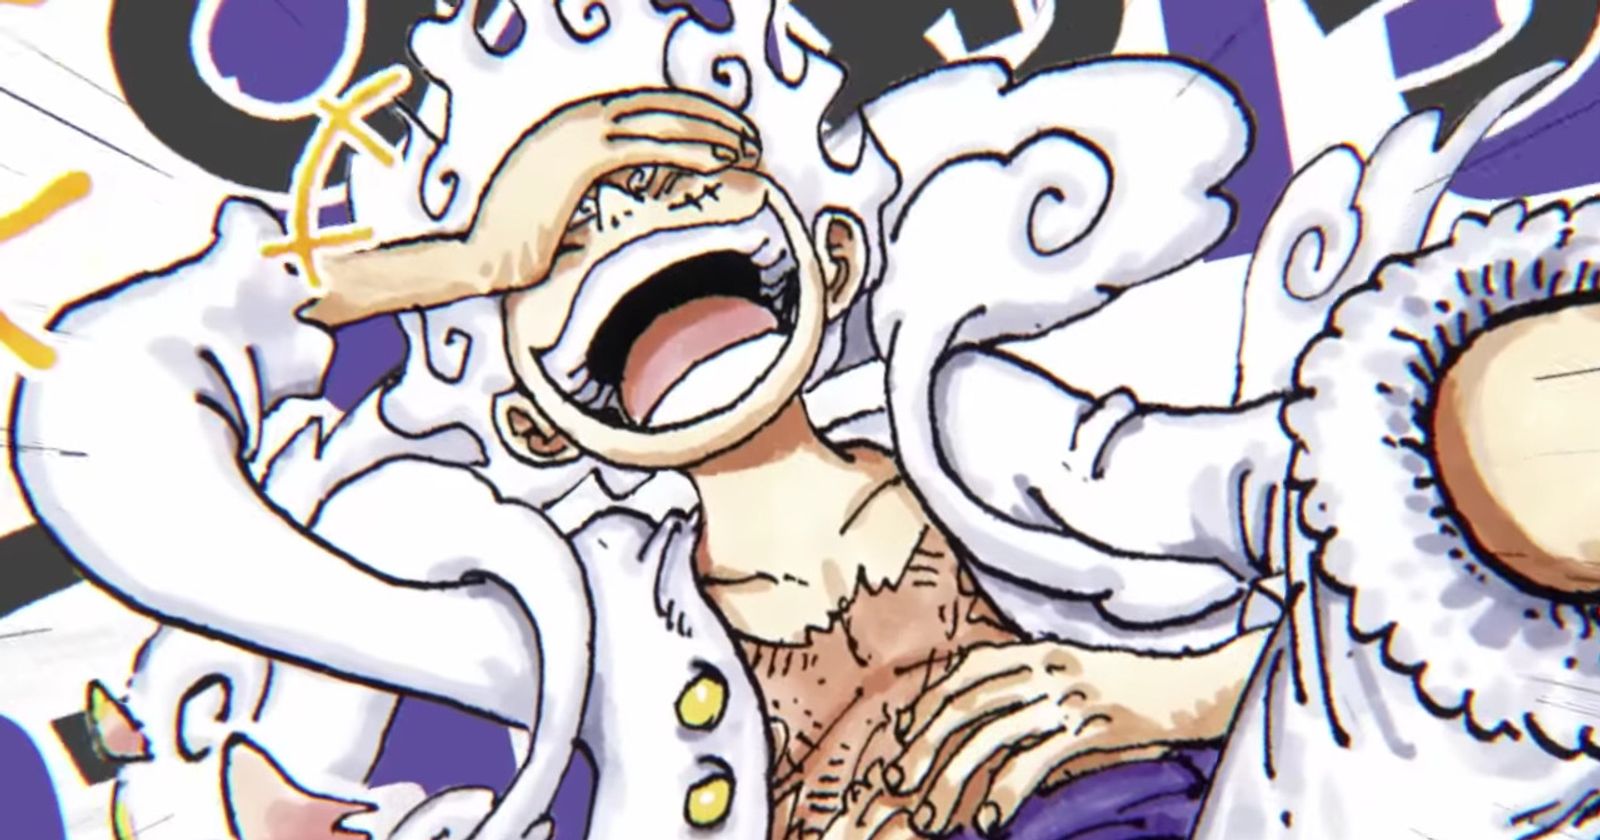 One Piece Day 2023] GEAR 5 Revealed!